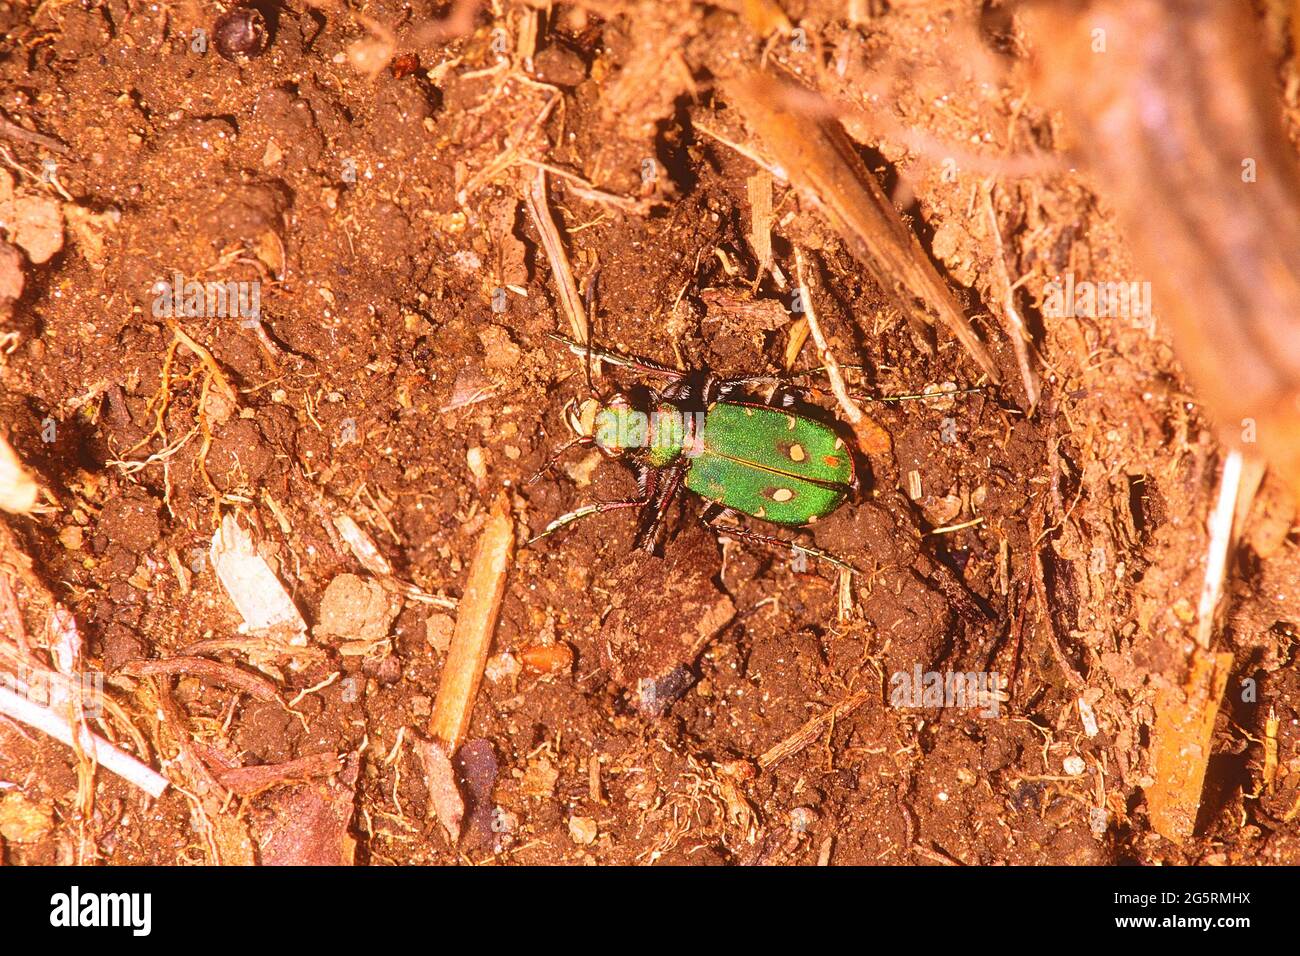 Feld-Sandlaufkäfer, Cicindela campestris, Cicindelidae, Käfer, Insekt, Tier, Kanton Zürich, Schweiz Stock Photo